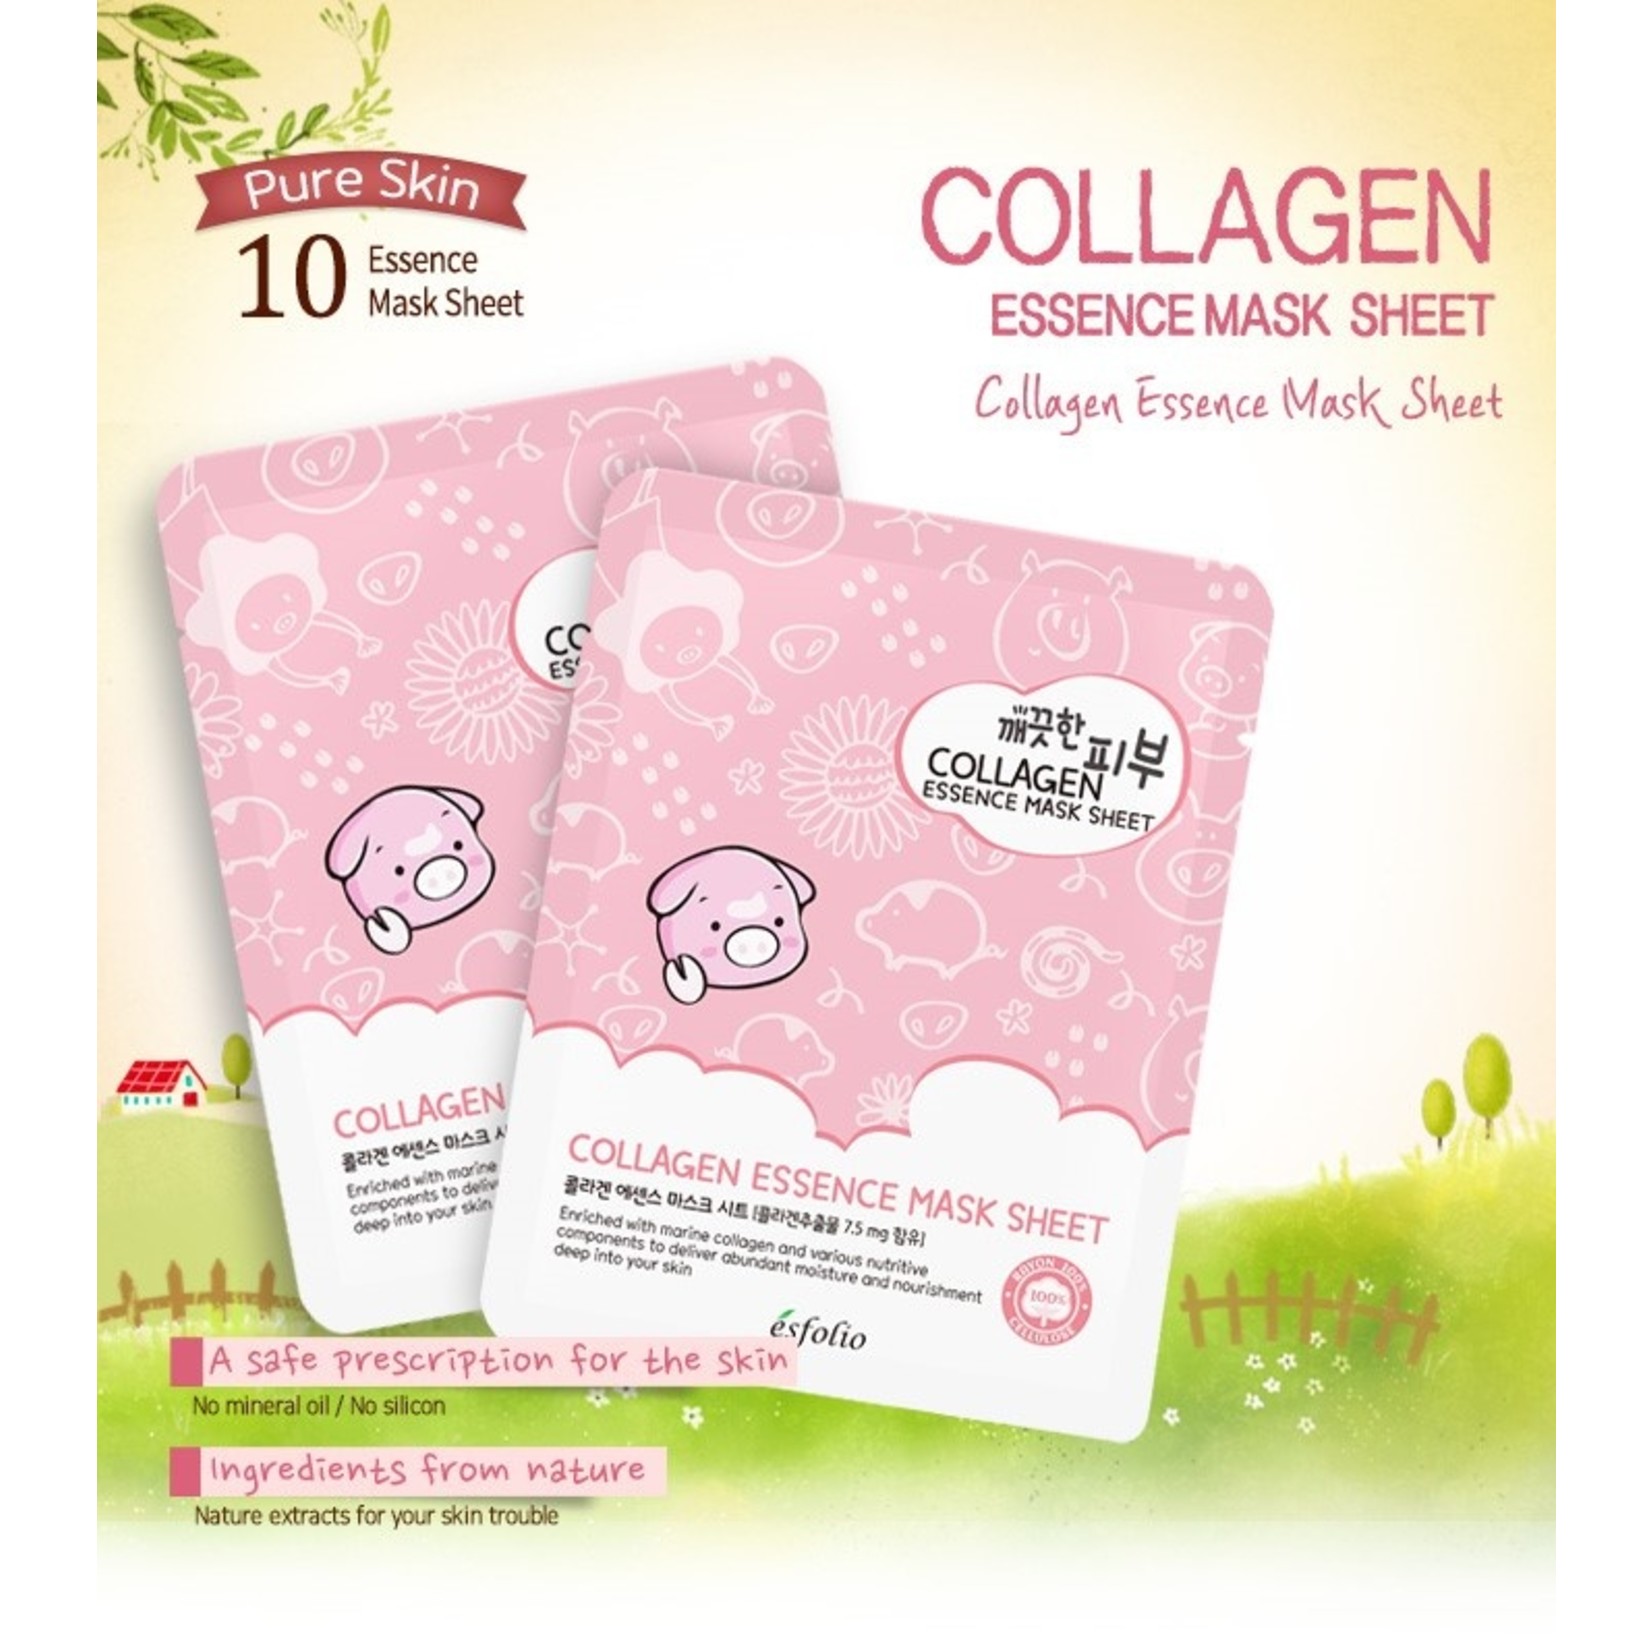 esfolio Pure Skin Collagen Essence Sheet Mask